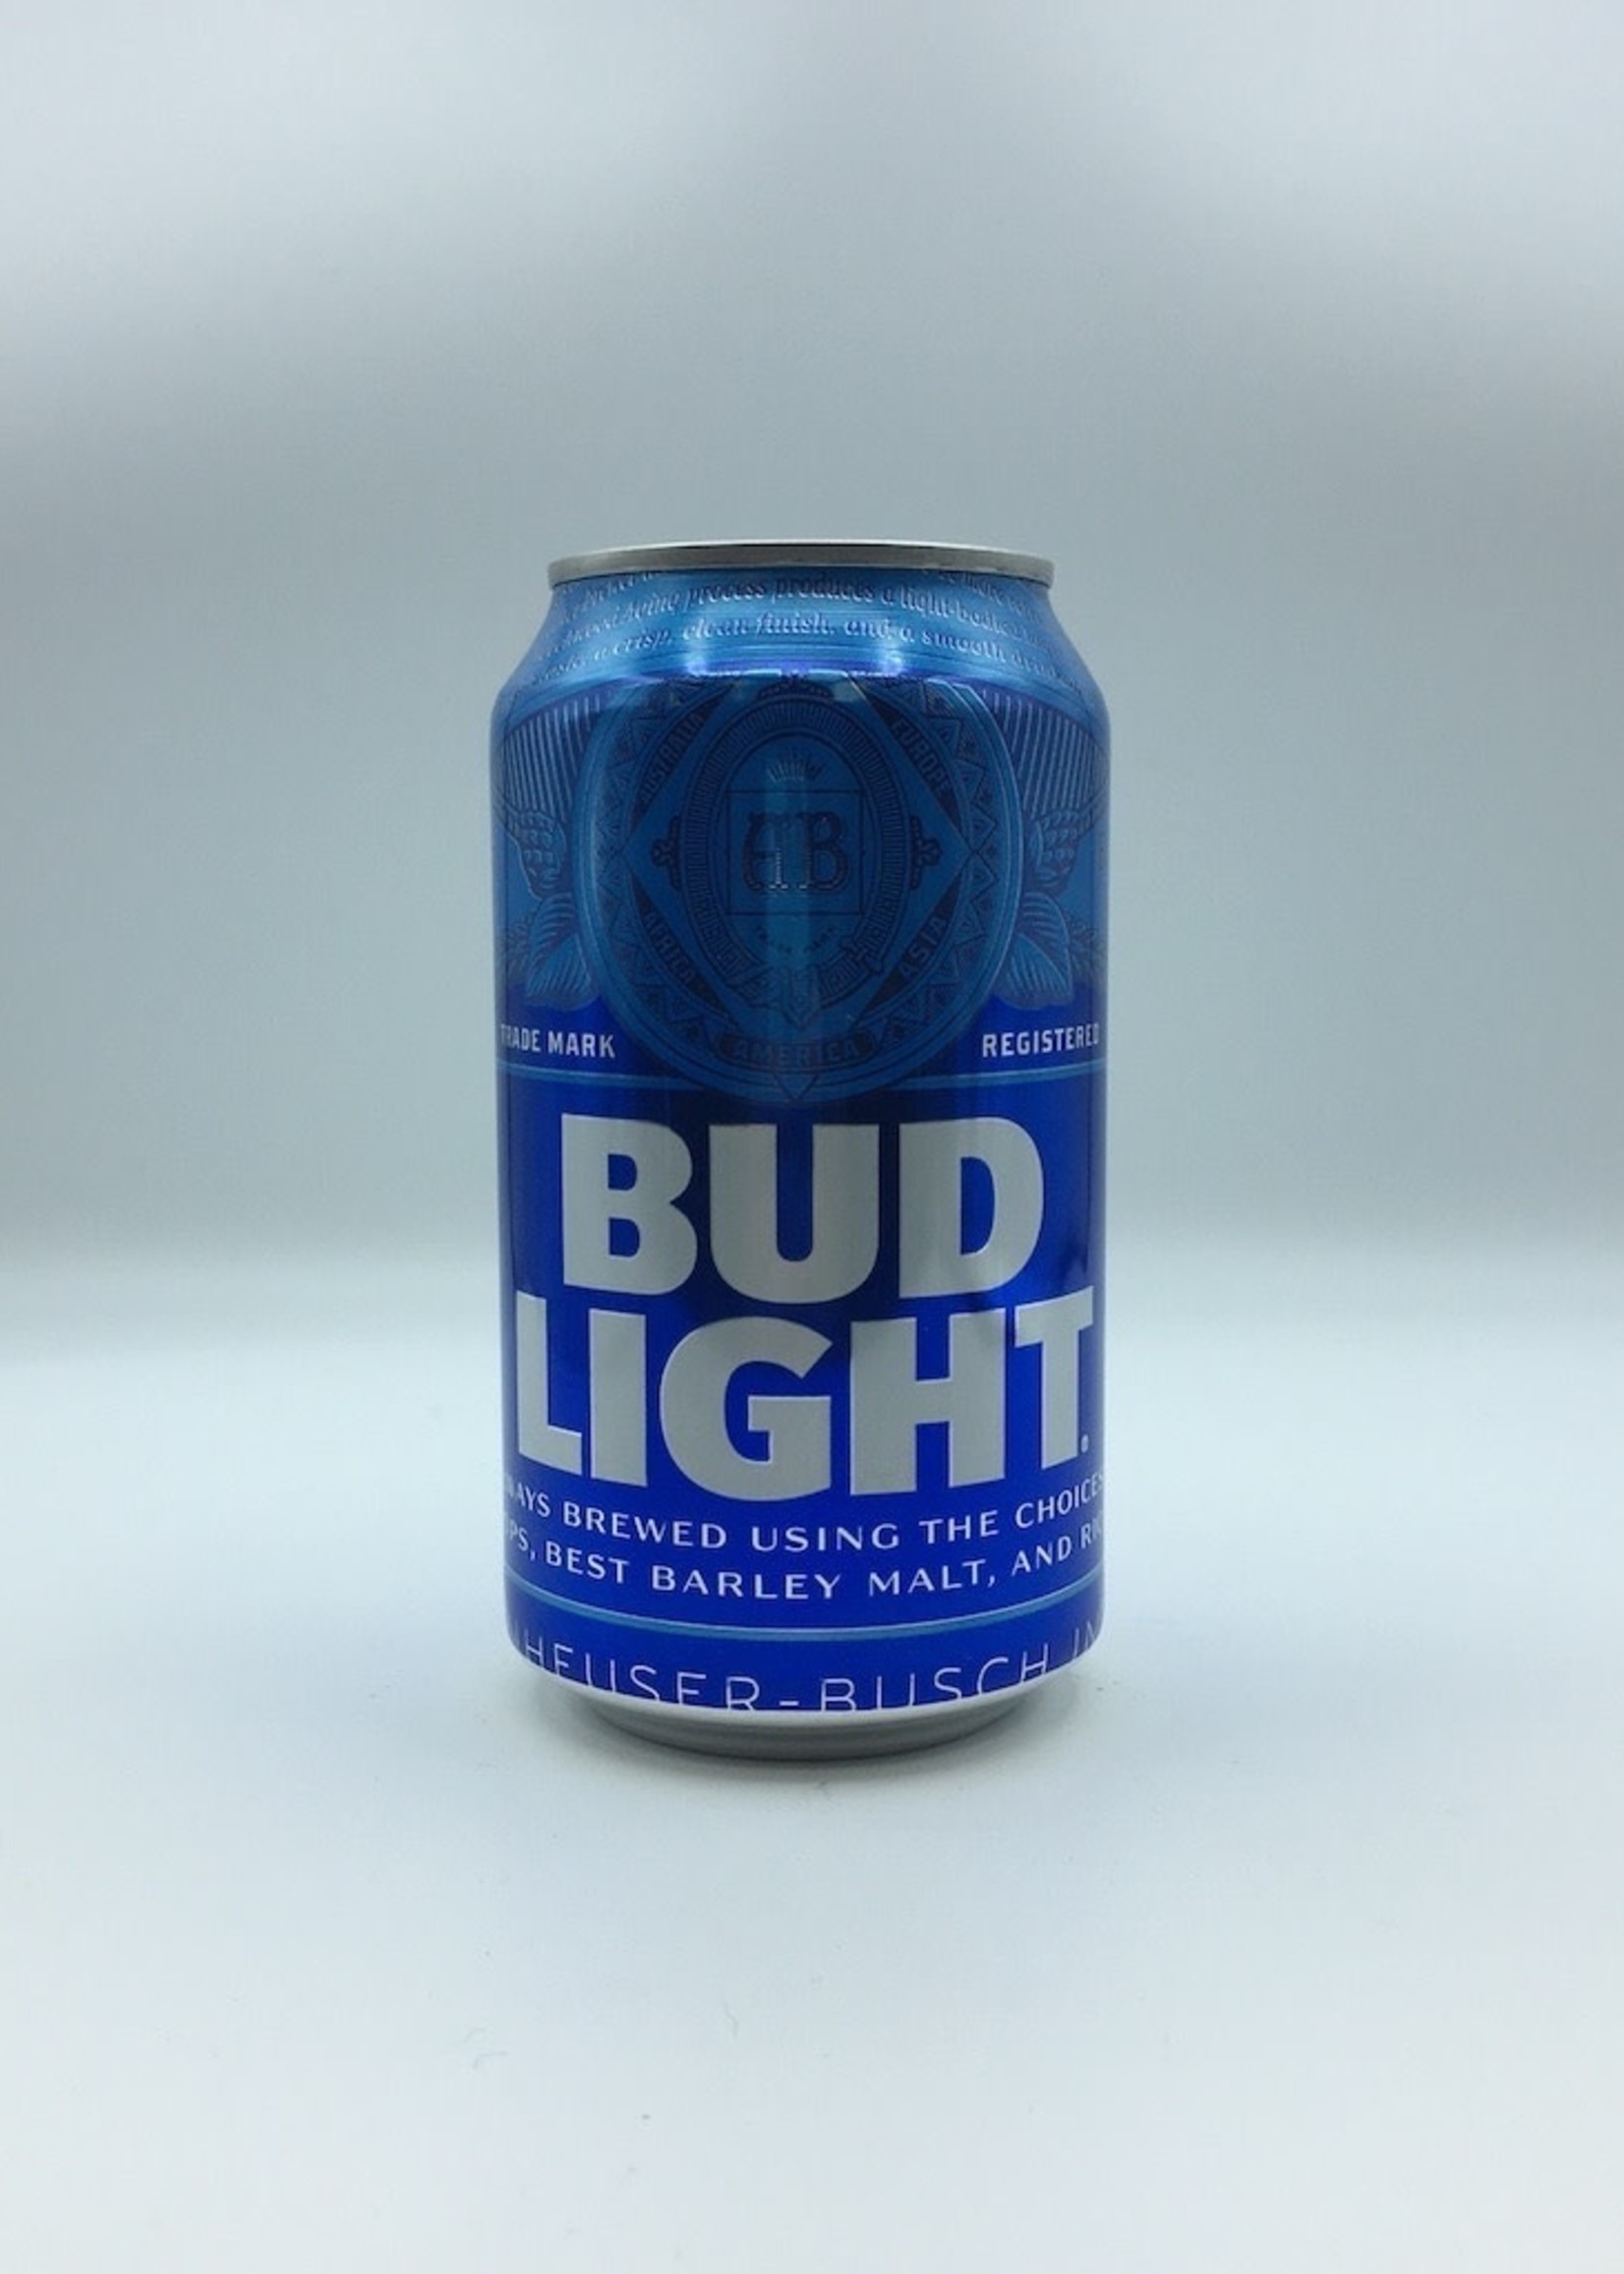 Bud Light Cans Case 12OZ SE